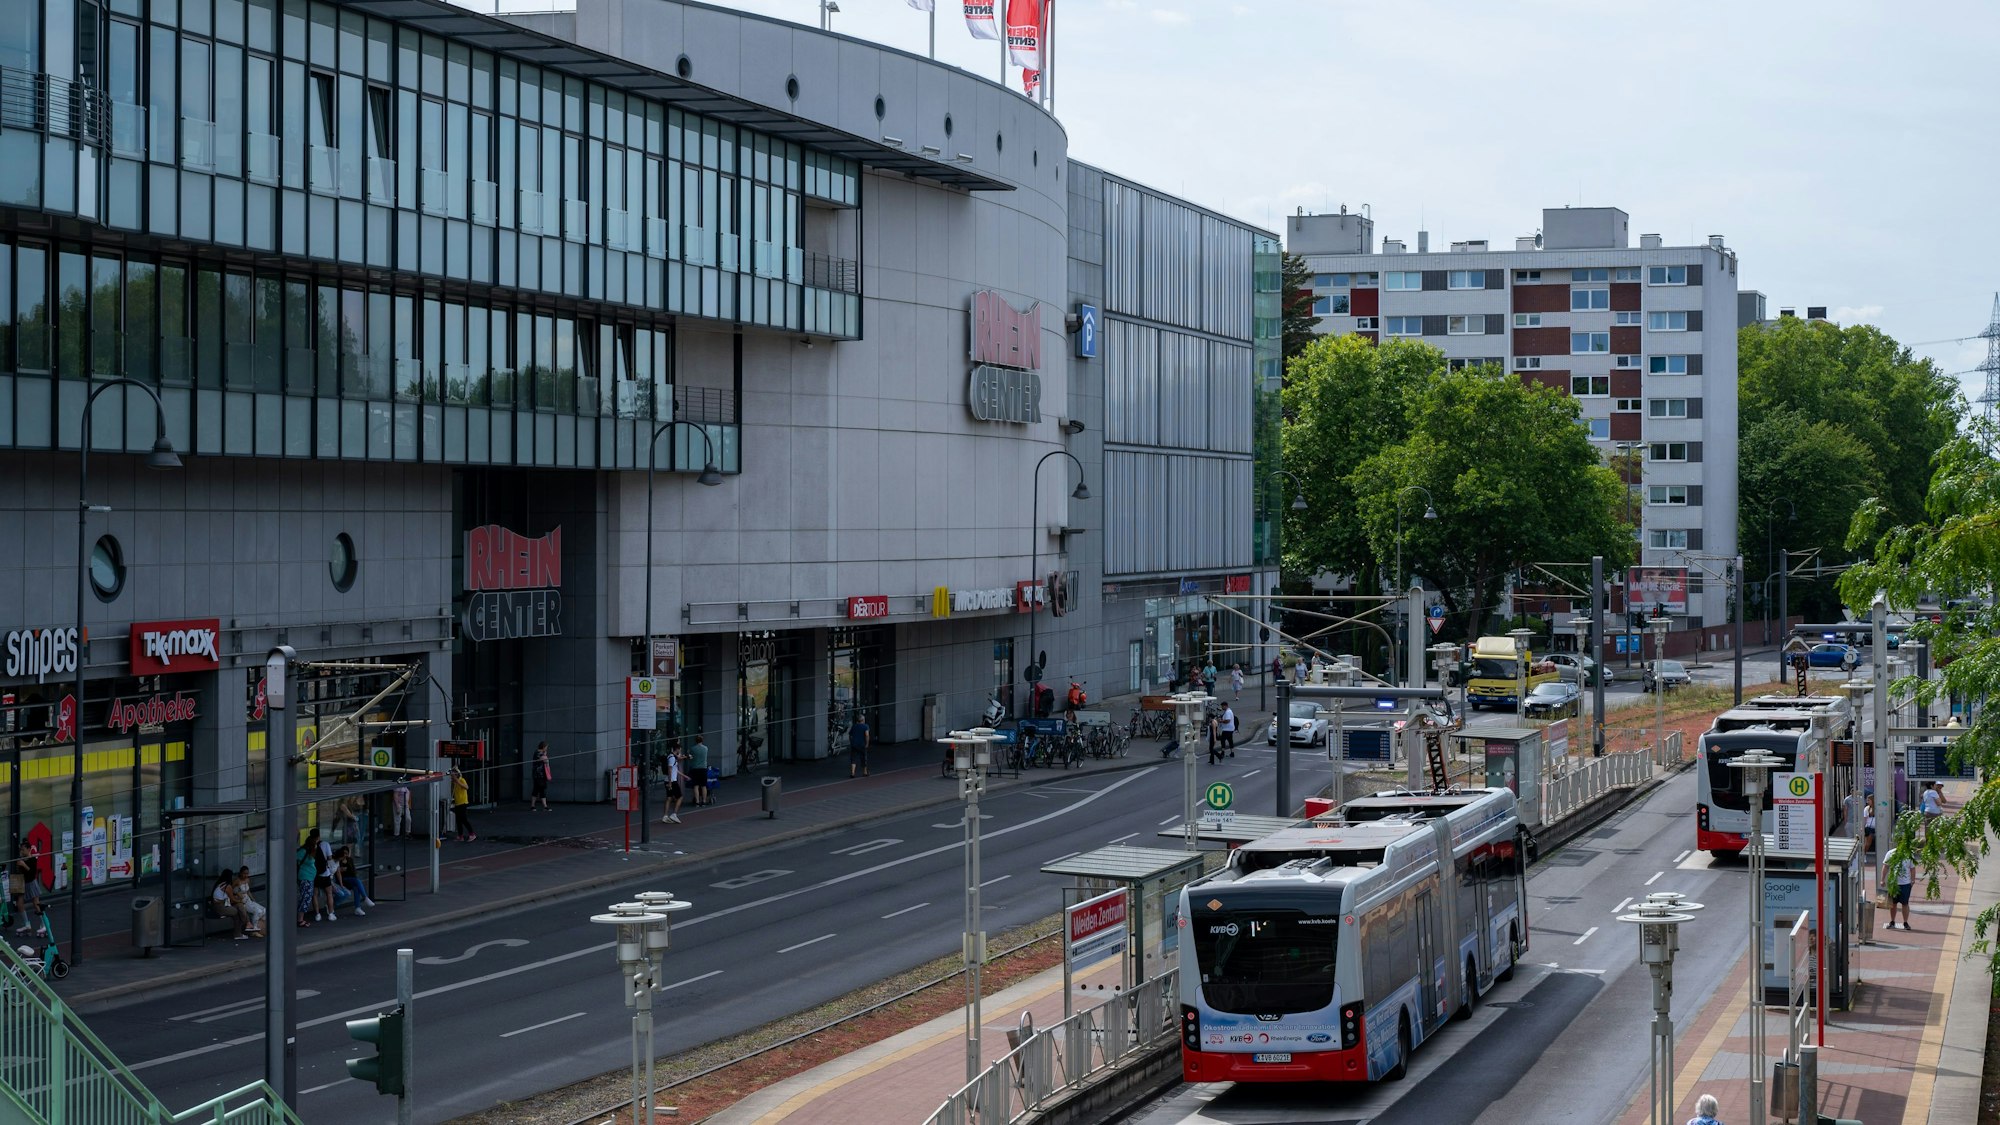 Blick auf das Einkaufszentrum Rhein-Center in Weiden. Im Vordergrund ist der Straßenverkehr mit Autos und Bussen zu sehen.